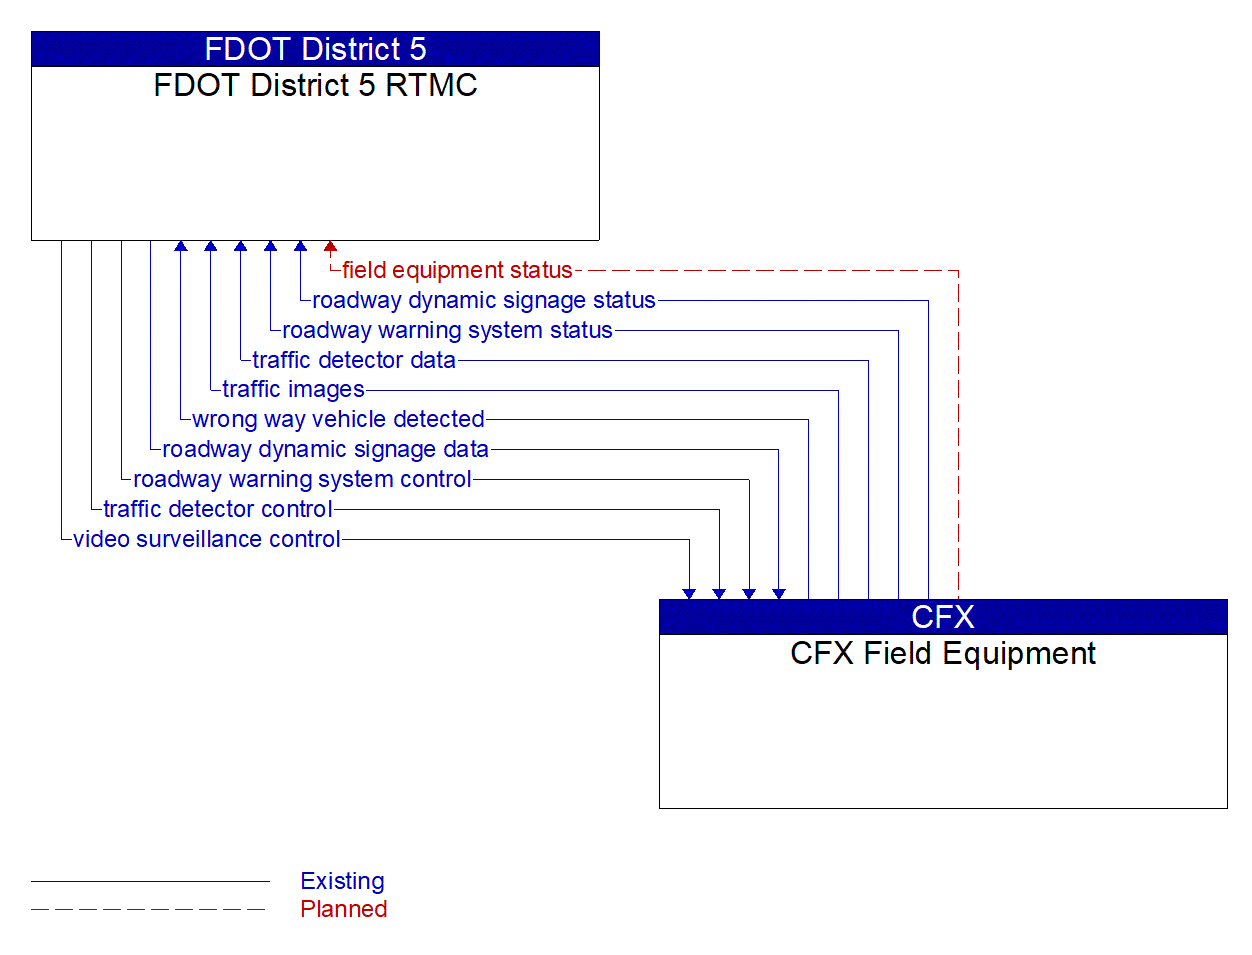 Architecture Flow Diagram: CFX Field Equipment <--> FDOT District 5 RTMC